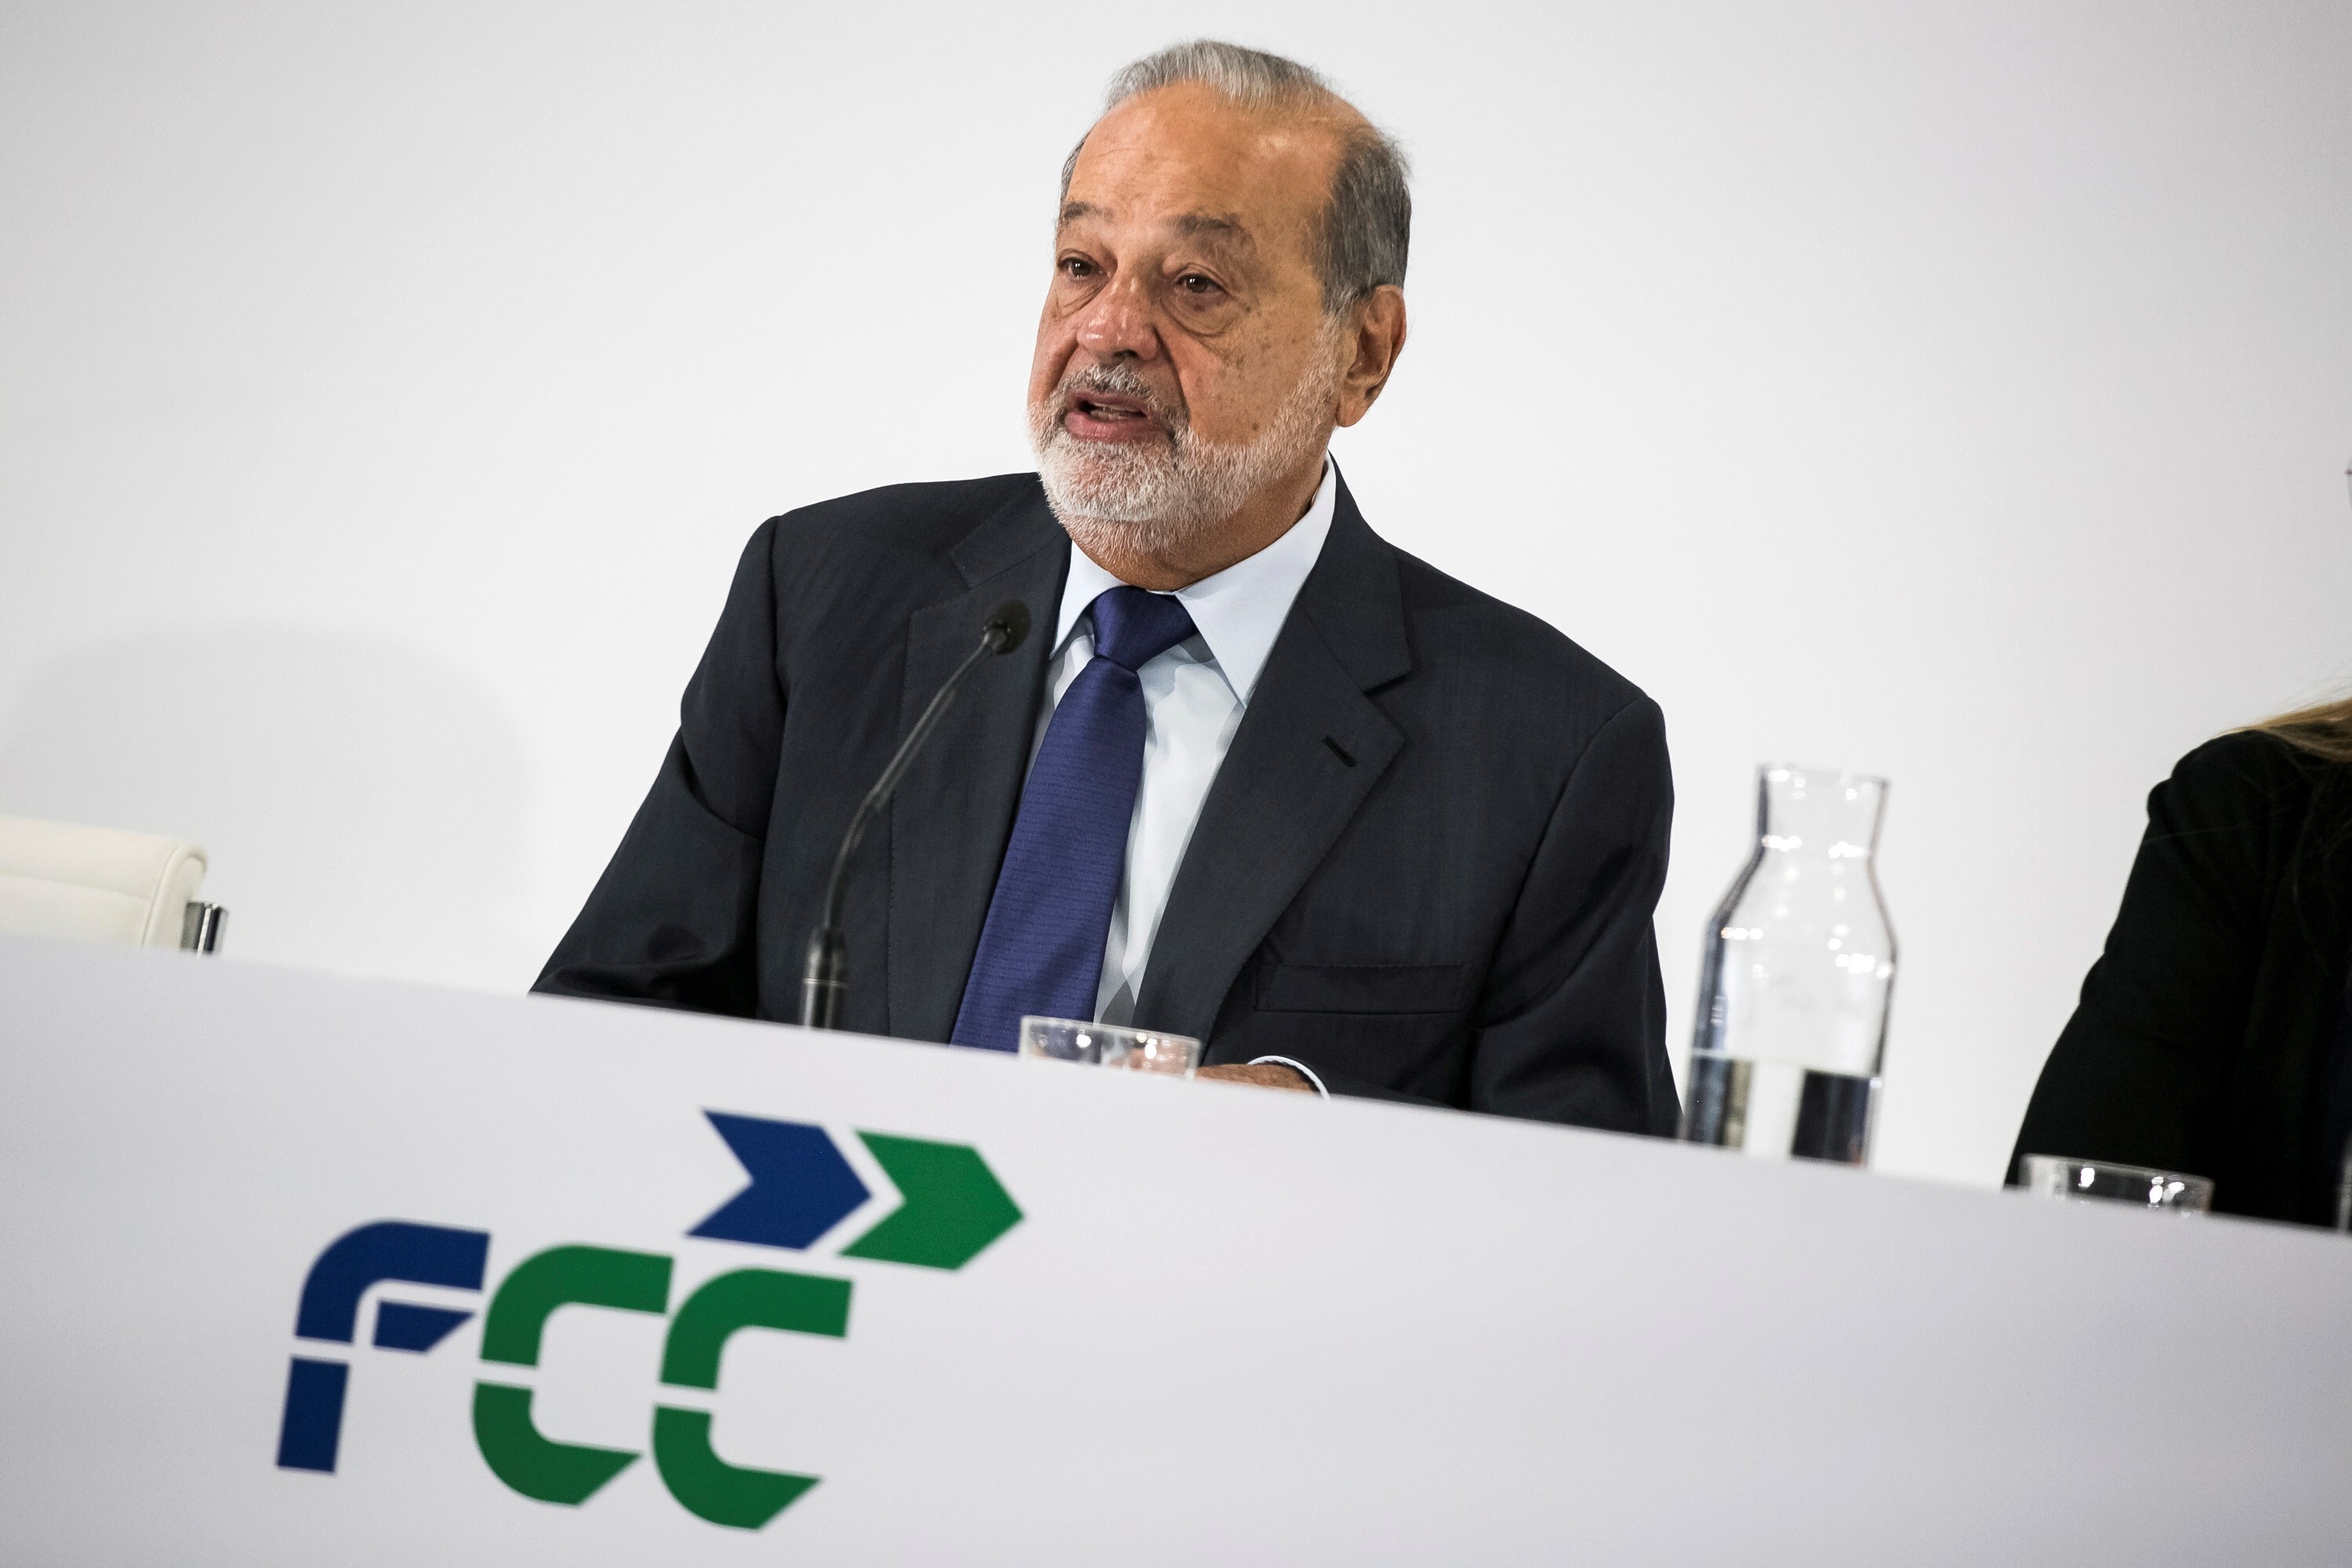 Cuánto ha aumentado la fortuna de Carlos Slim en 2021